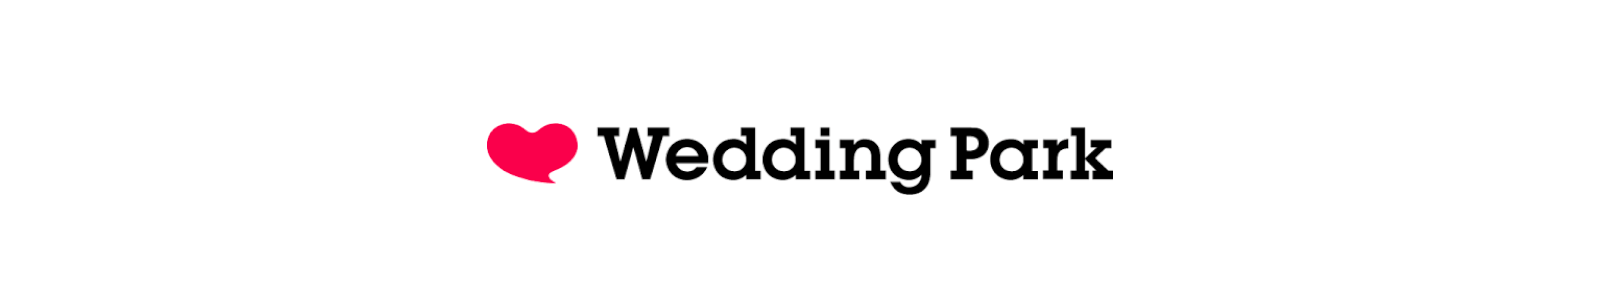 Wedding Park ロゴ